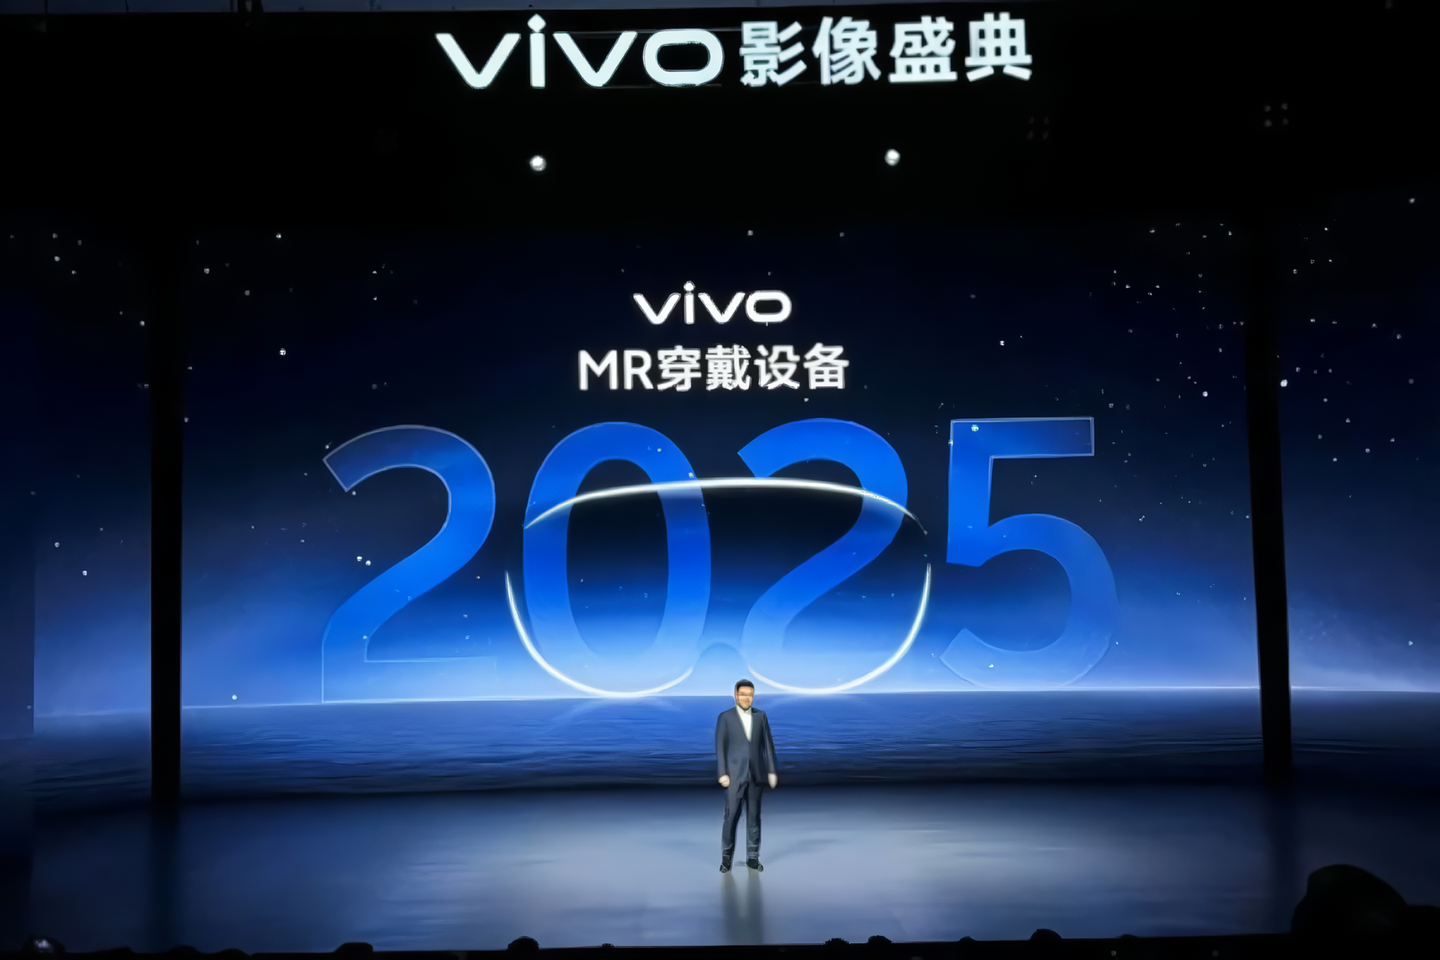 Vivo planuje wypuścić swój pierwszy zestaw słuchawkowy do rzeczywistości mieszanej w 2025 roku